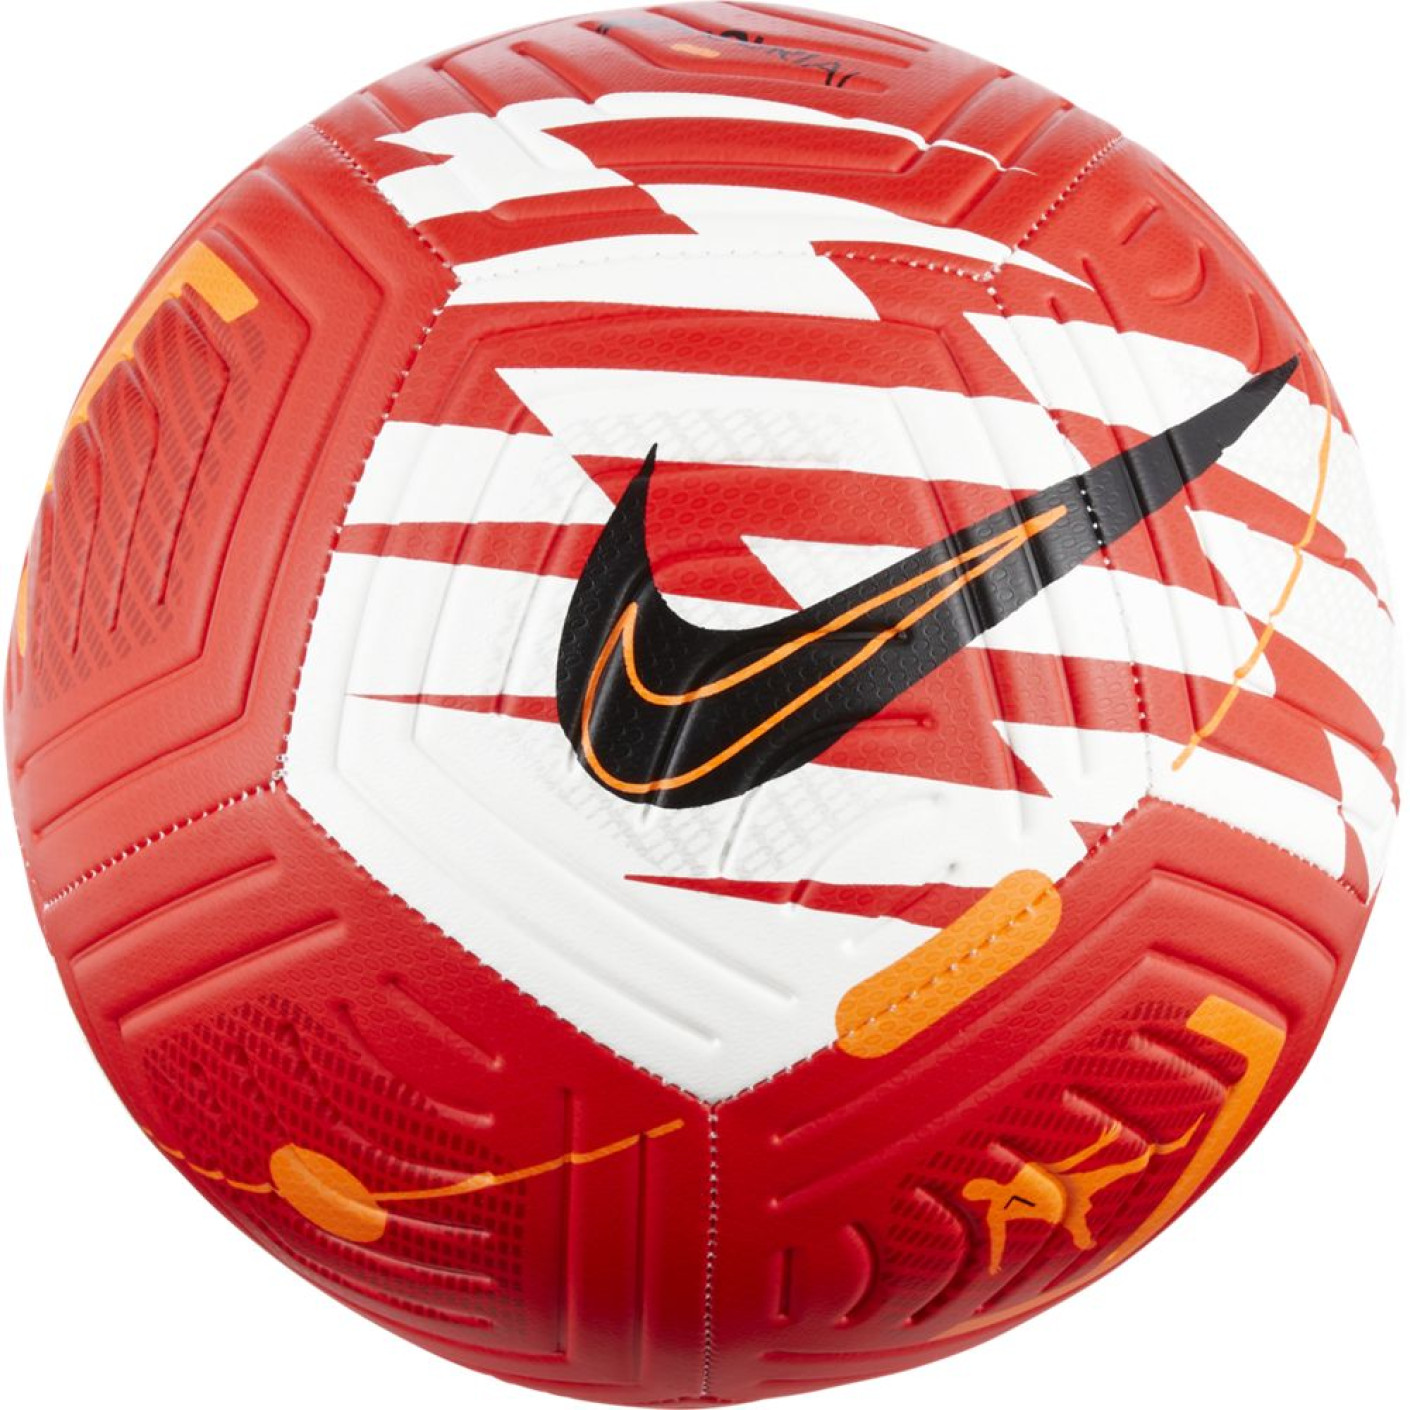 Nike CR7 Strike Ballon Taille 5 Rouge Vf Orange Noir